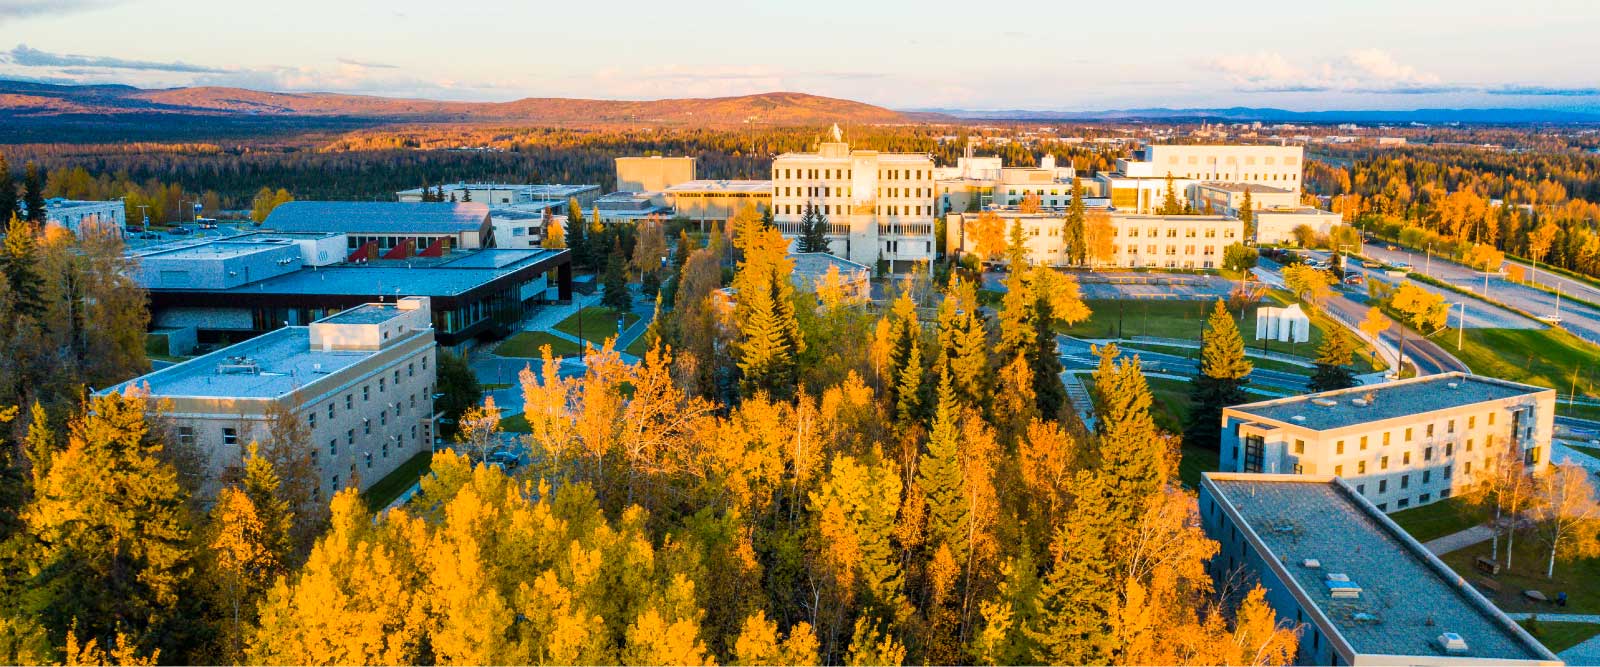 UAF Home | University of Alaska Fairbanks